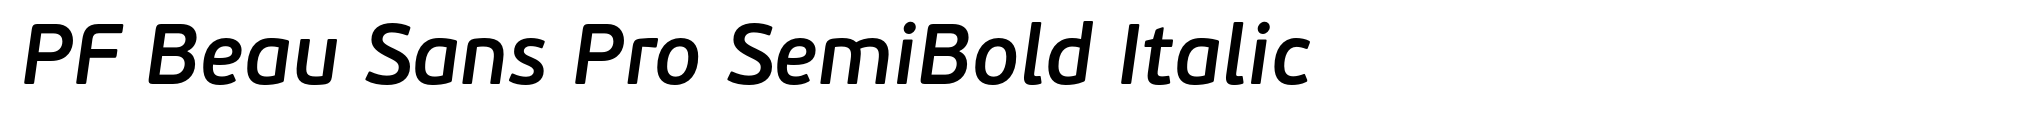 PF Beau Sans Pro SemiBold Italic image